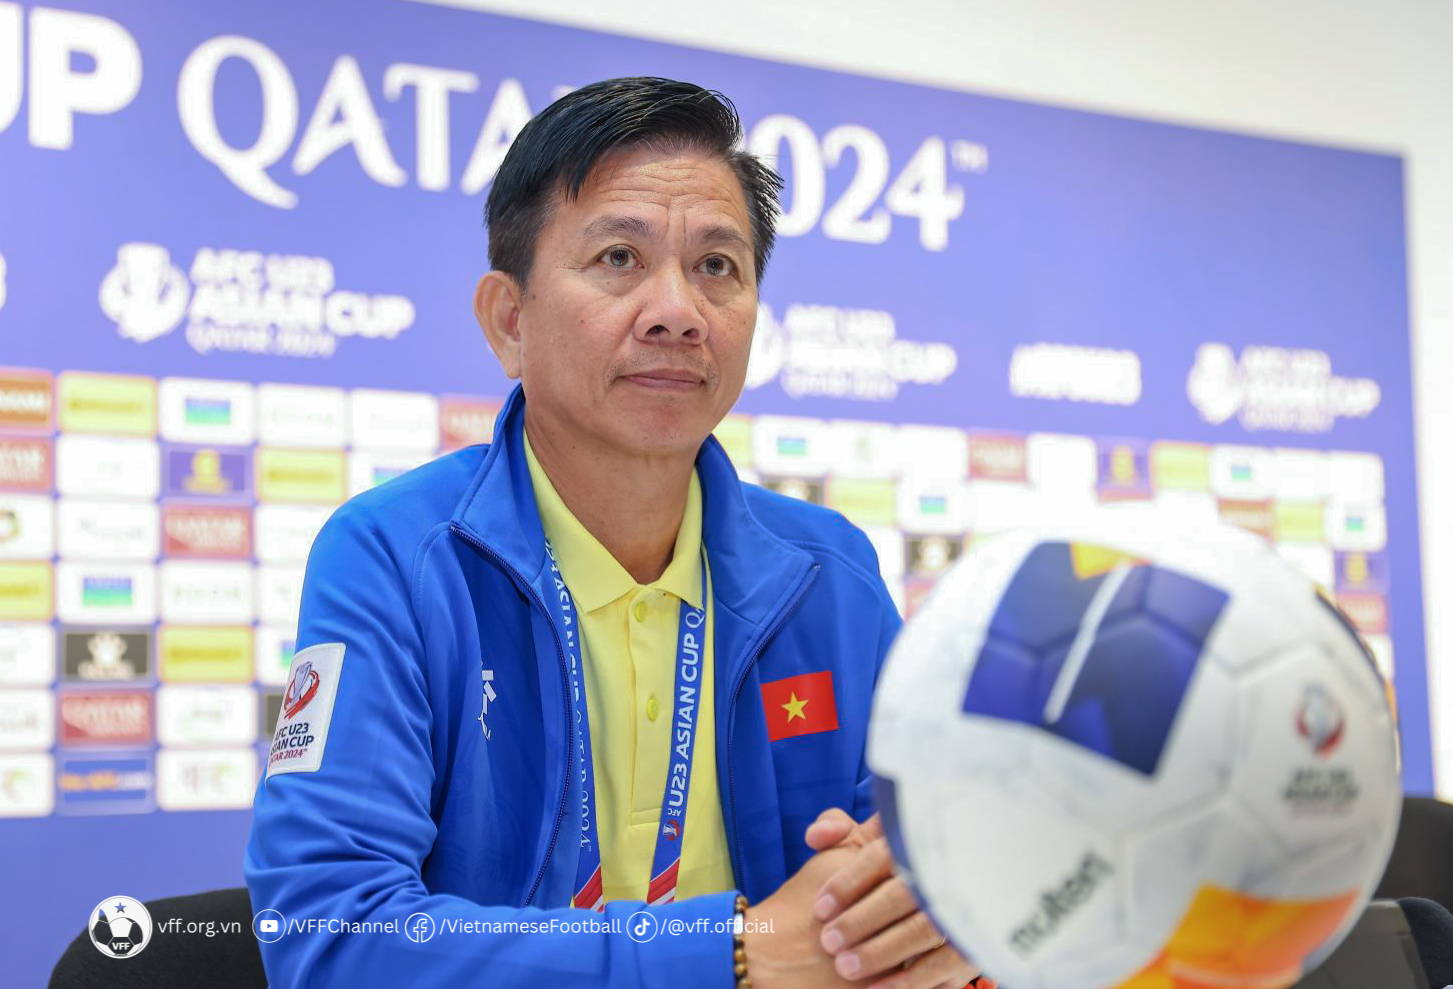 HLV Hoàng Anh Tuấn không phàn nàn, chấp nhận sự thật khi U23 Việt Nam tan ‘mộng’ Olympic - Ảnh 3.